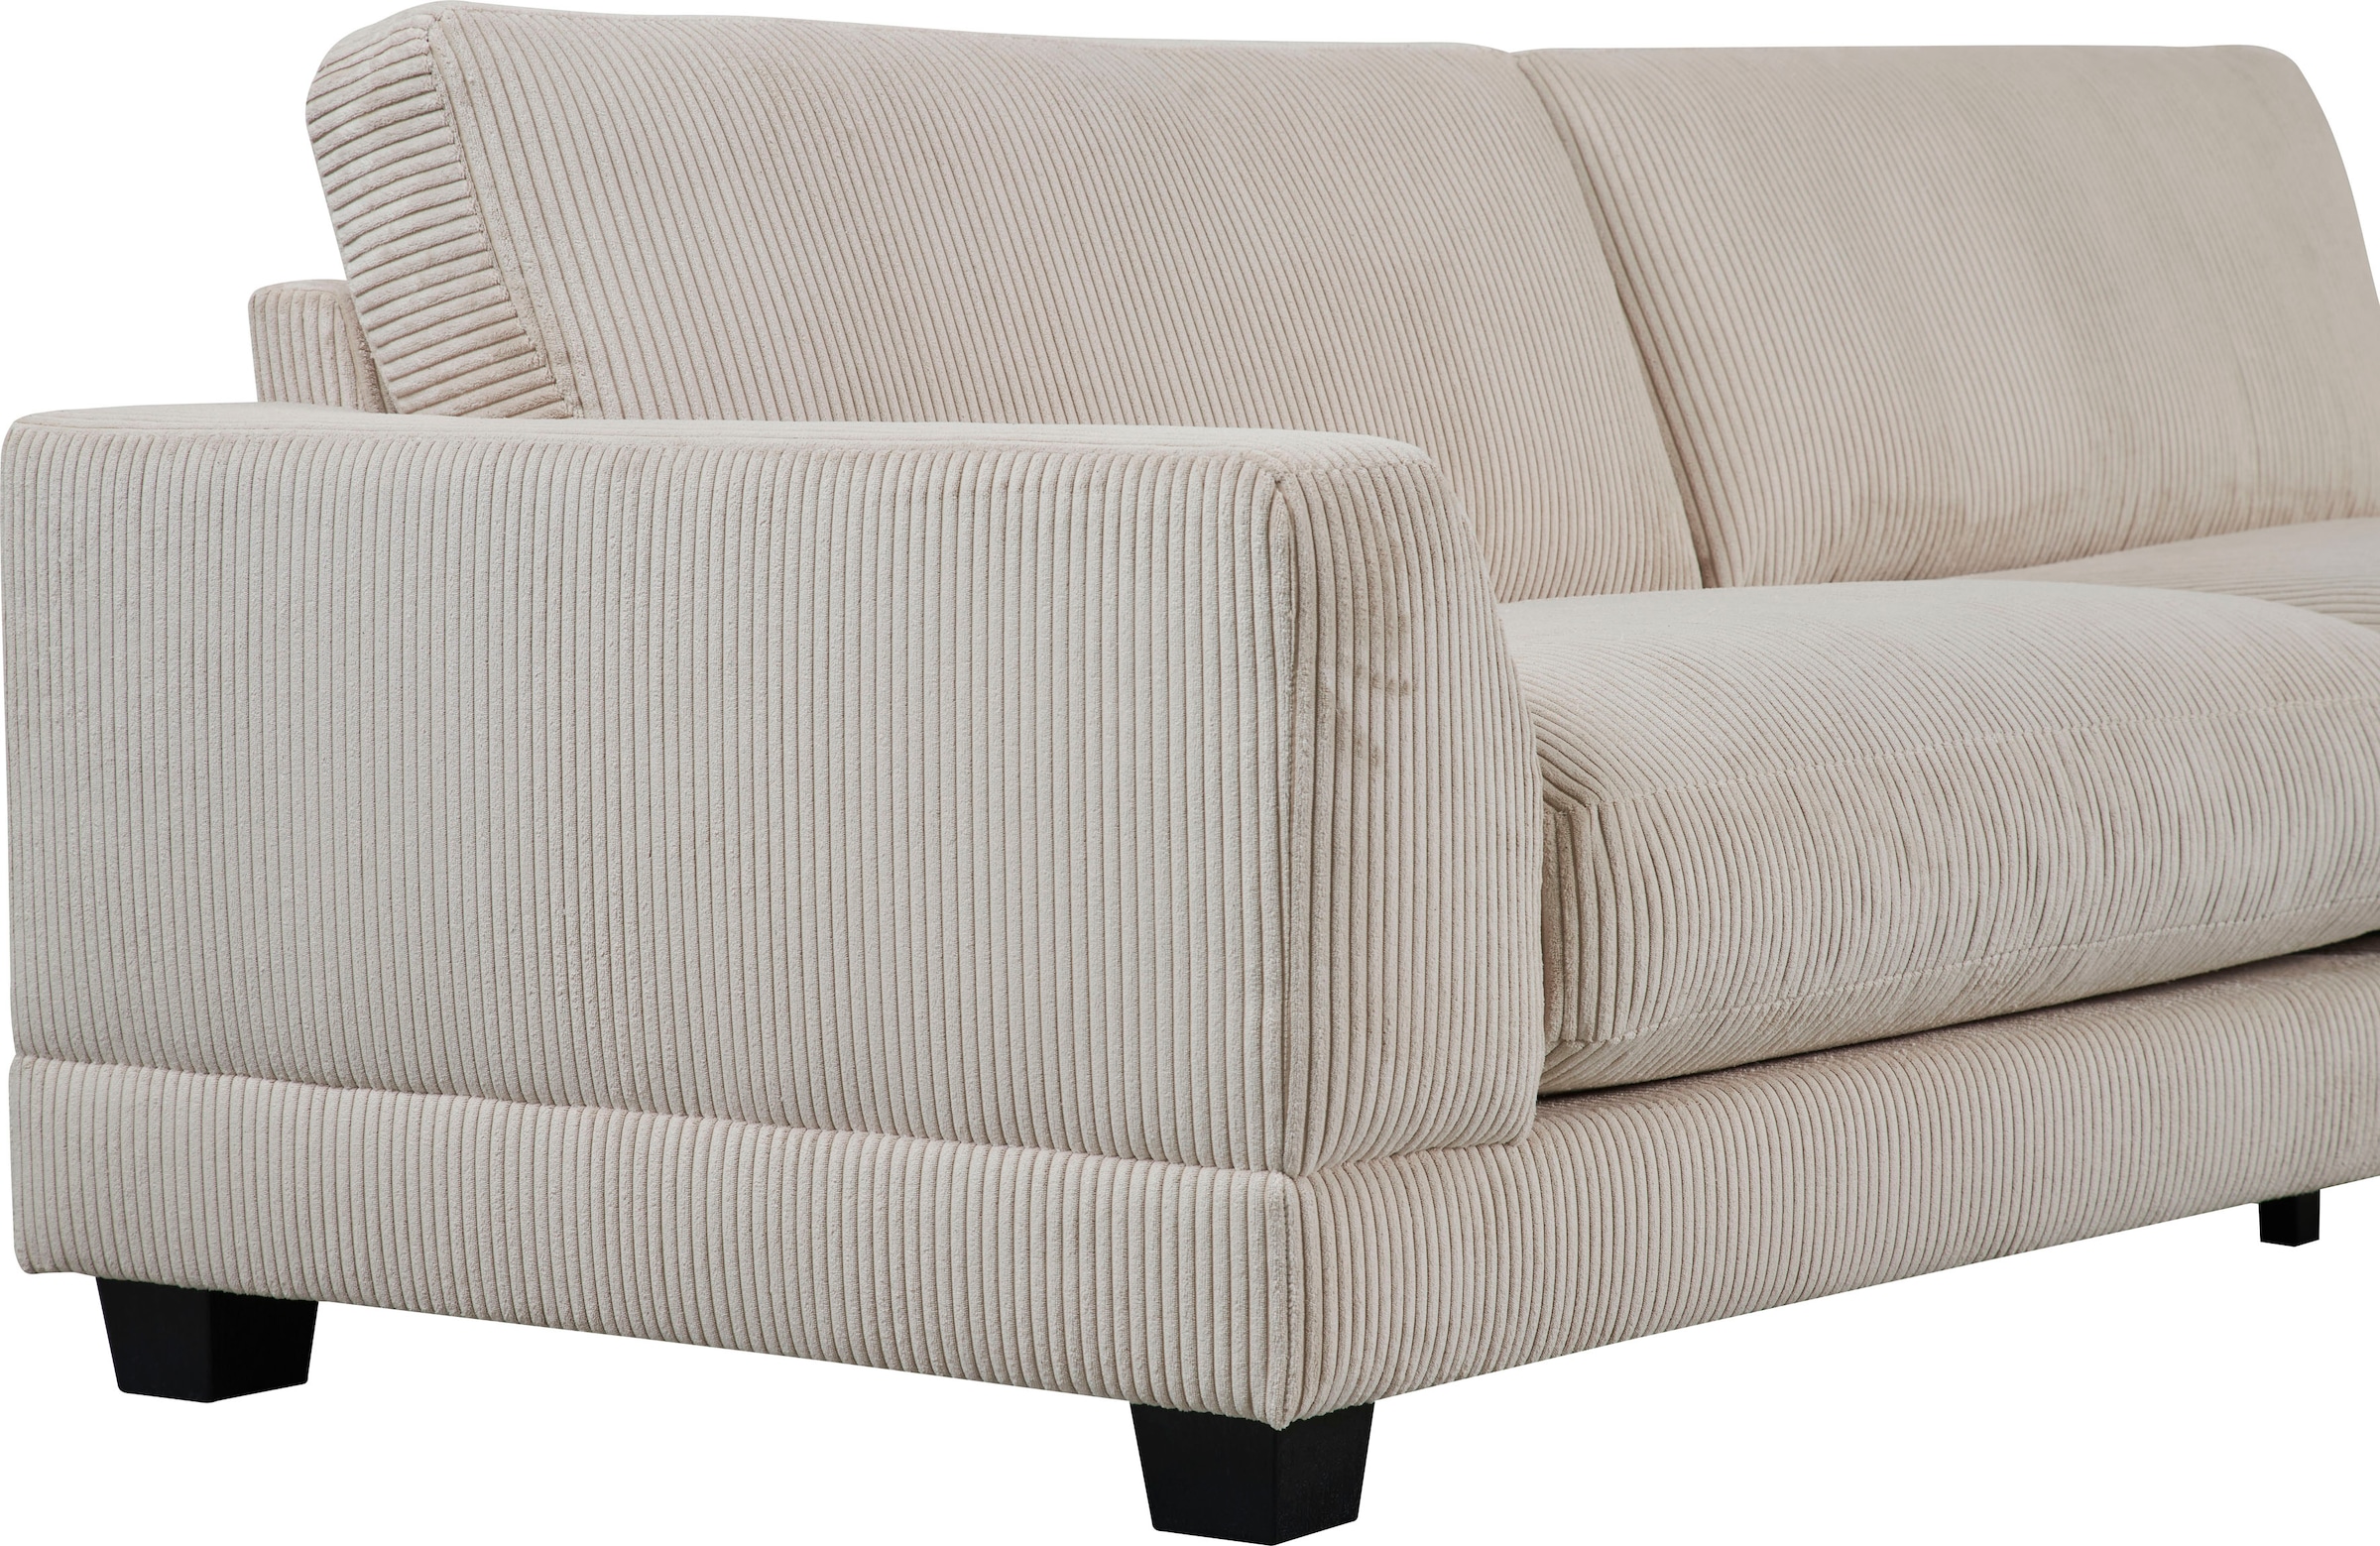 Home affaire 3,5-Sitzer »Parennes«, mit attraktivem Cord-Stoff, Breite 254 cm, Tiefe Sitzfläche 62 cm